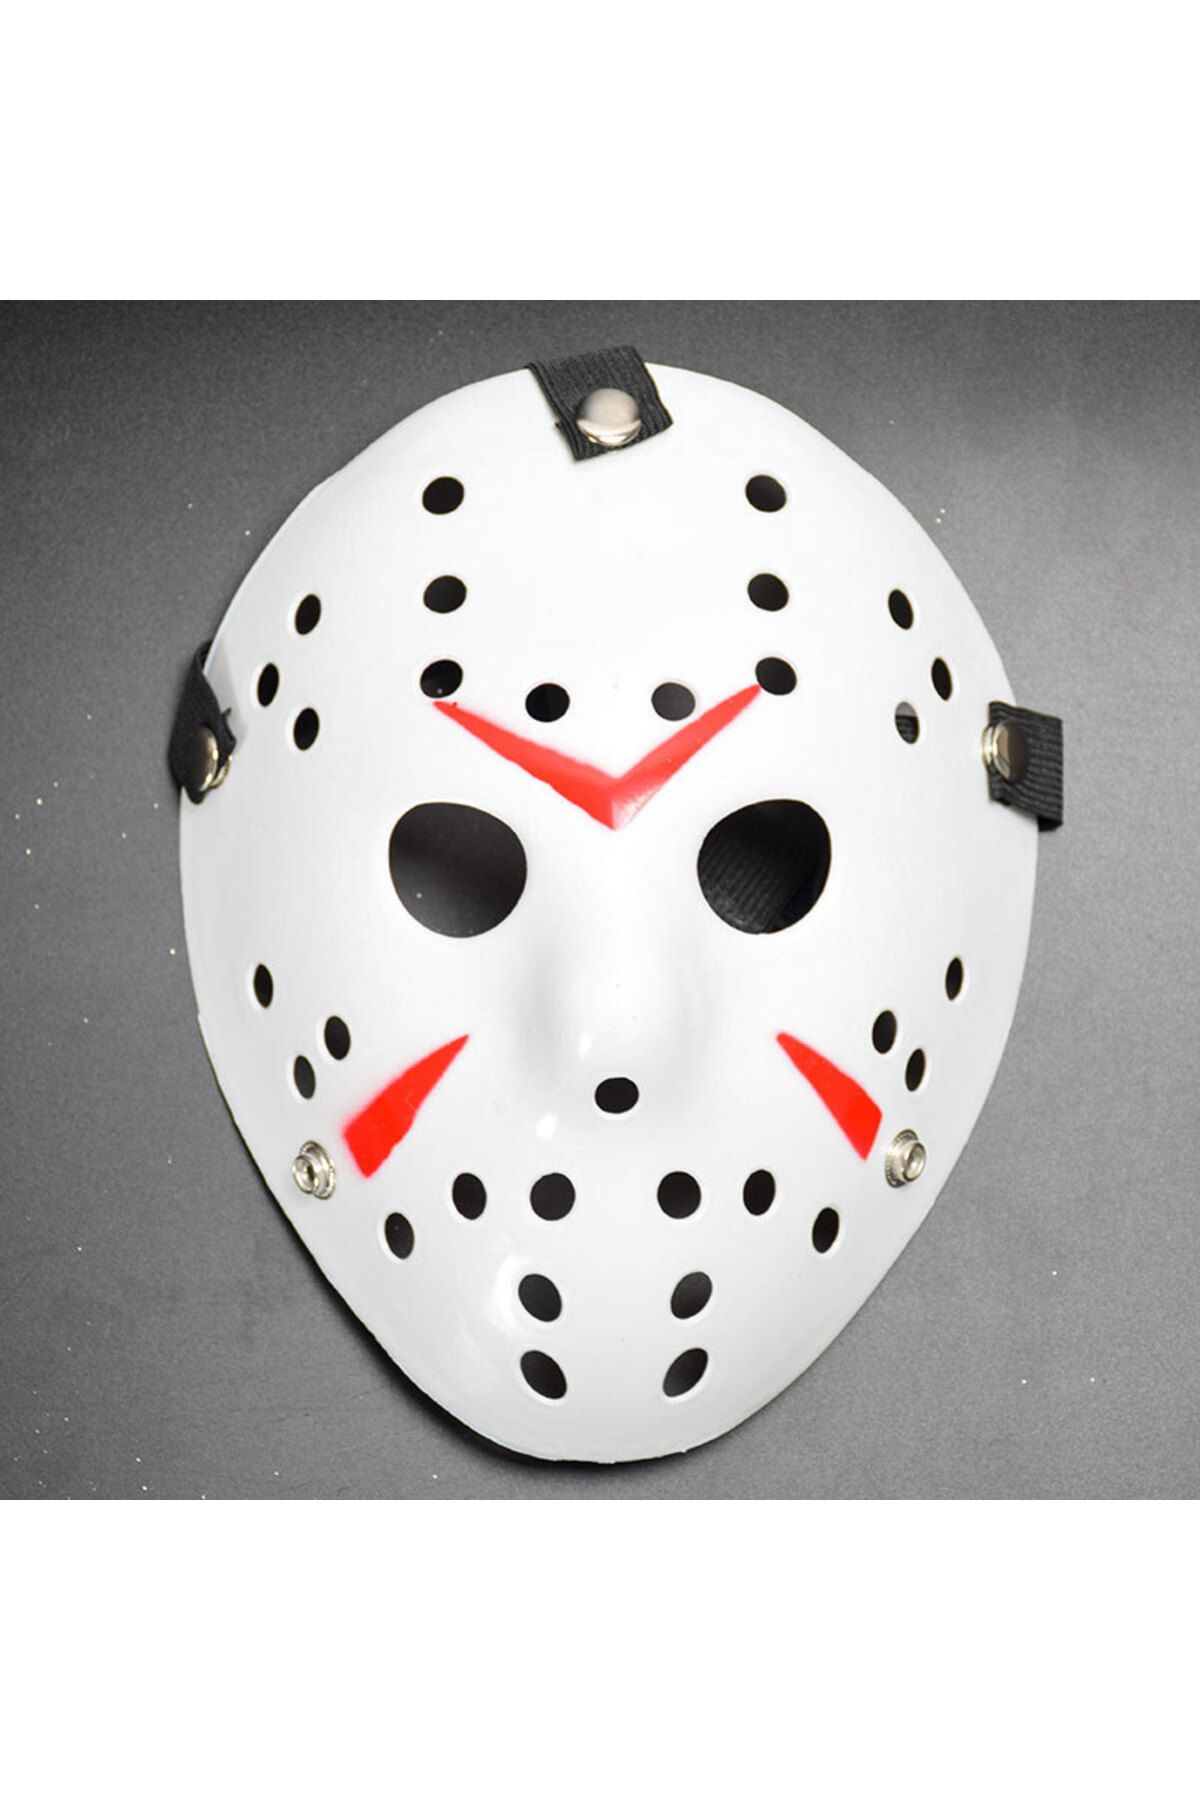 MAGAZZINO DELLAMORE Beyaz Renk Kırmızı Çizgili Tam Yüz Hokey Jason Maskesi Hannibal Maskesi